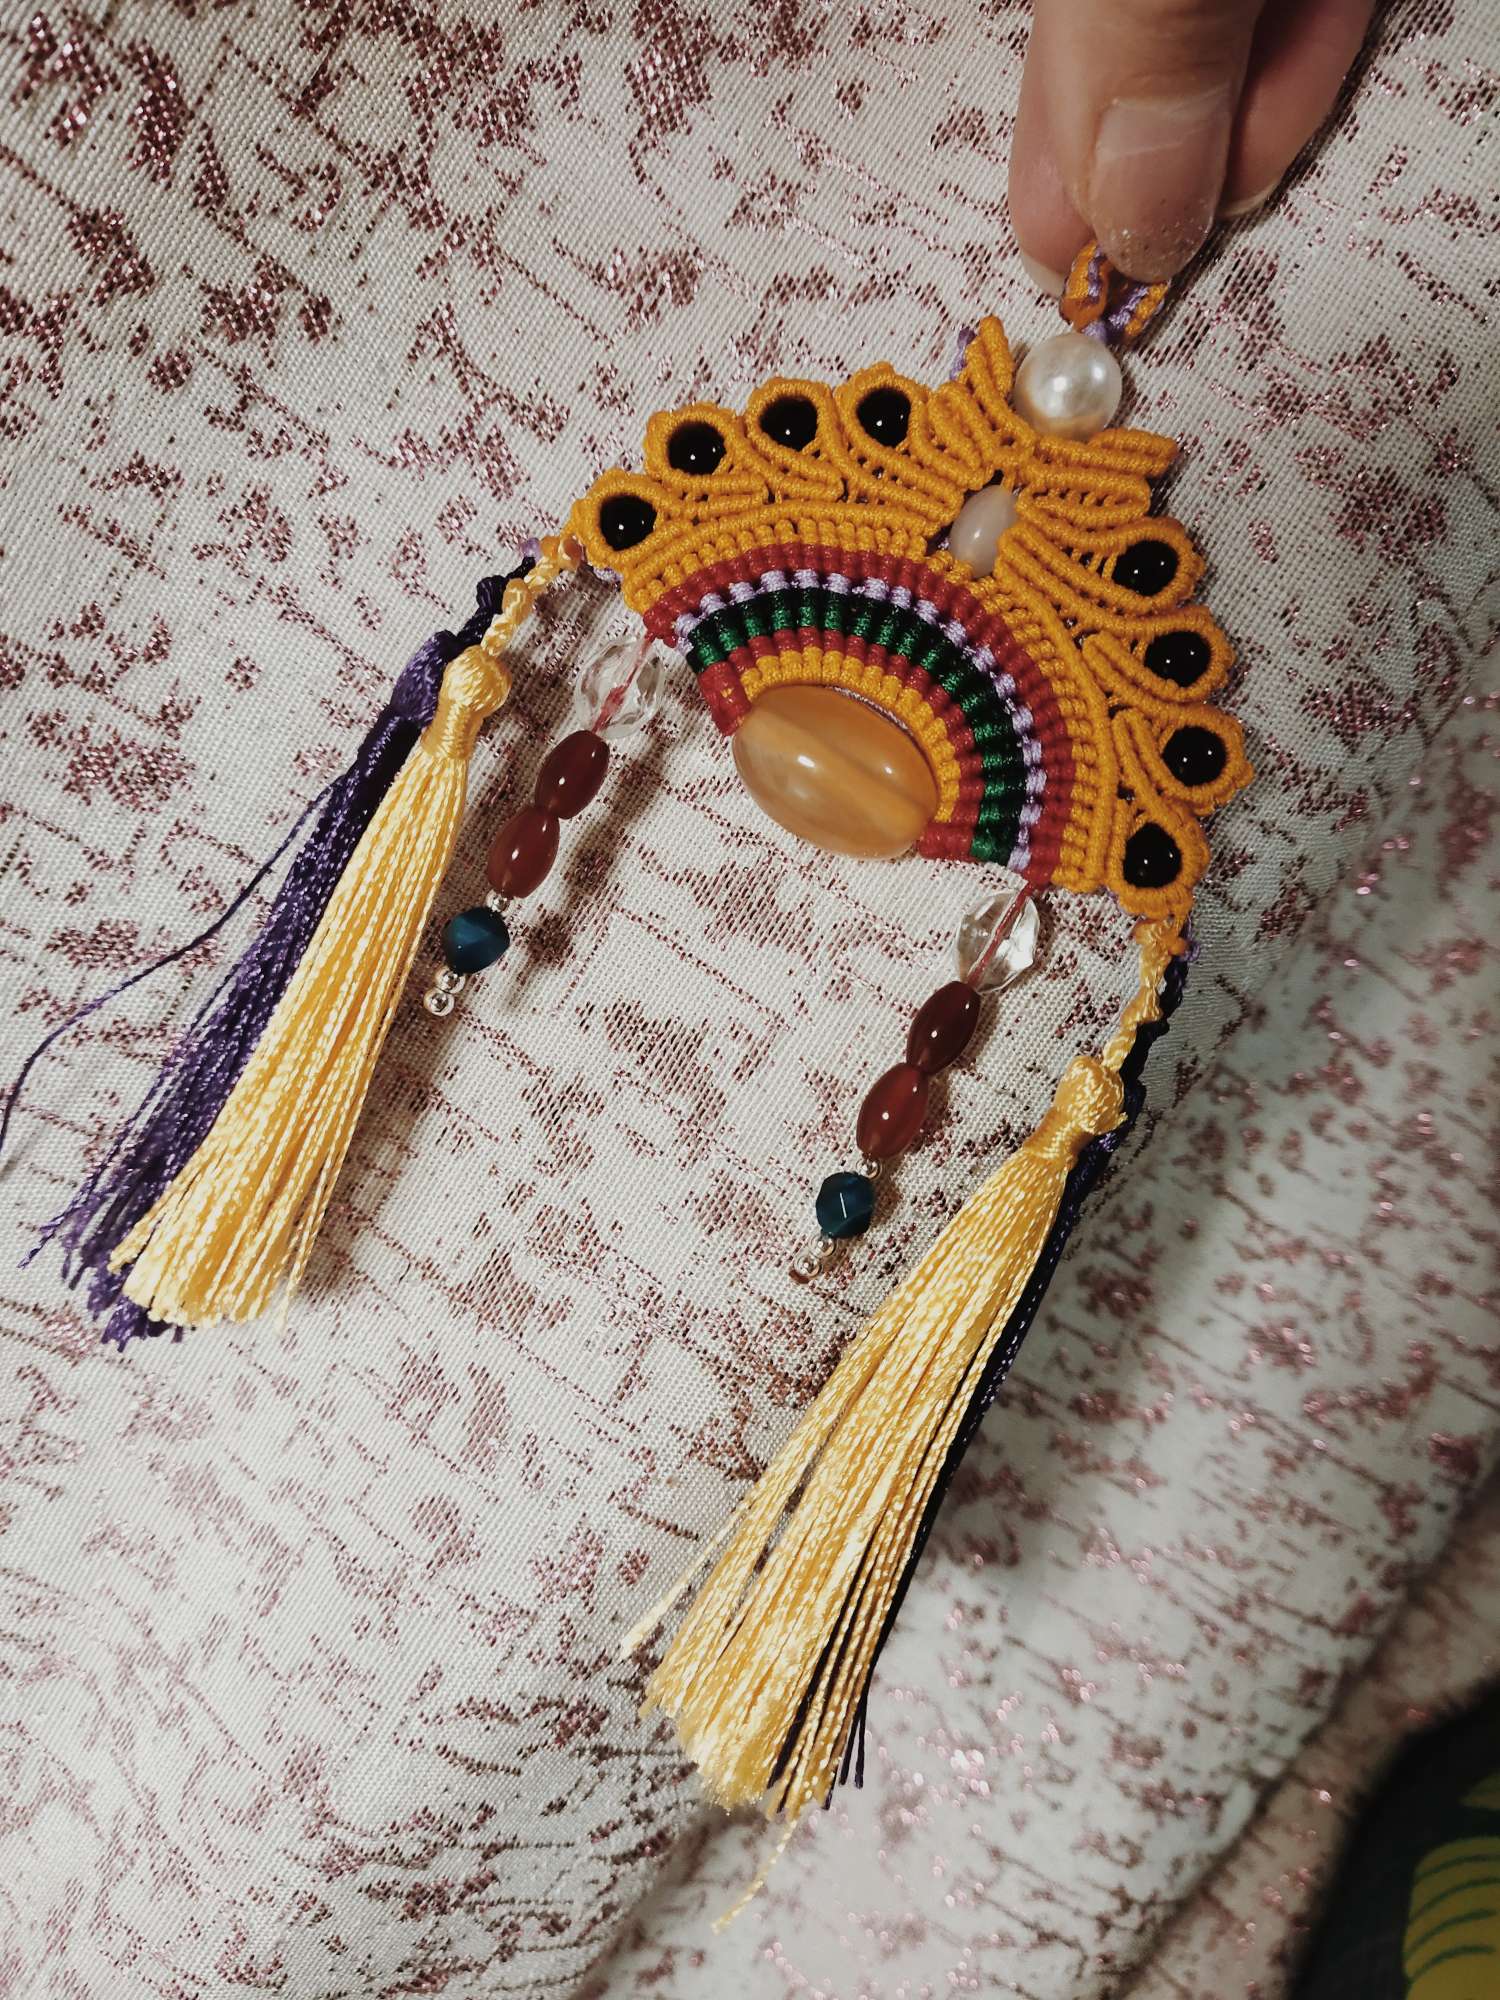 凤冠花嫁是我很喜欢的一种编织作品。
国风味十足。
超爱！学起来吧！
